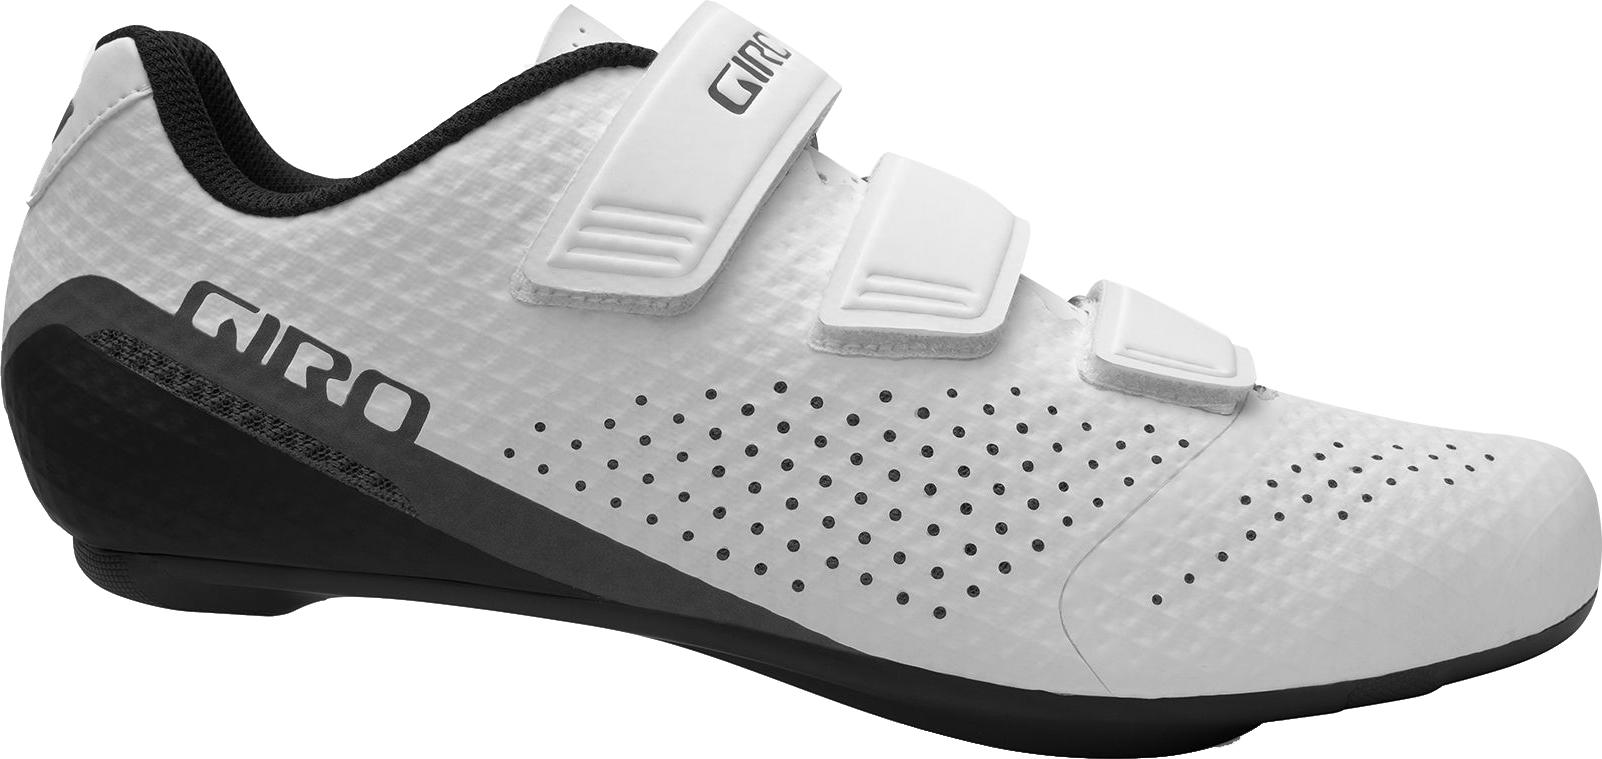 Giro Stylus Road Shoes  White